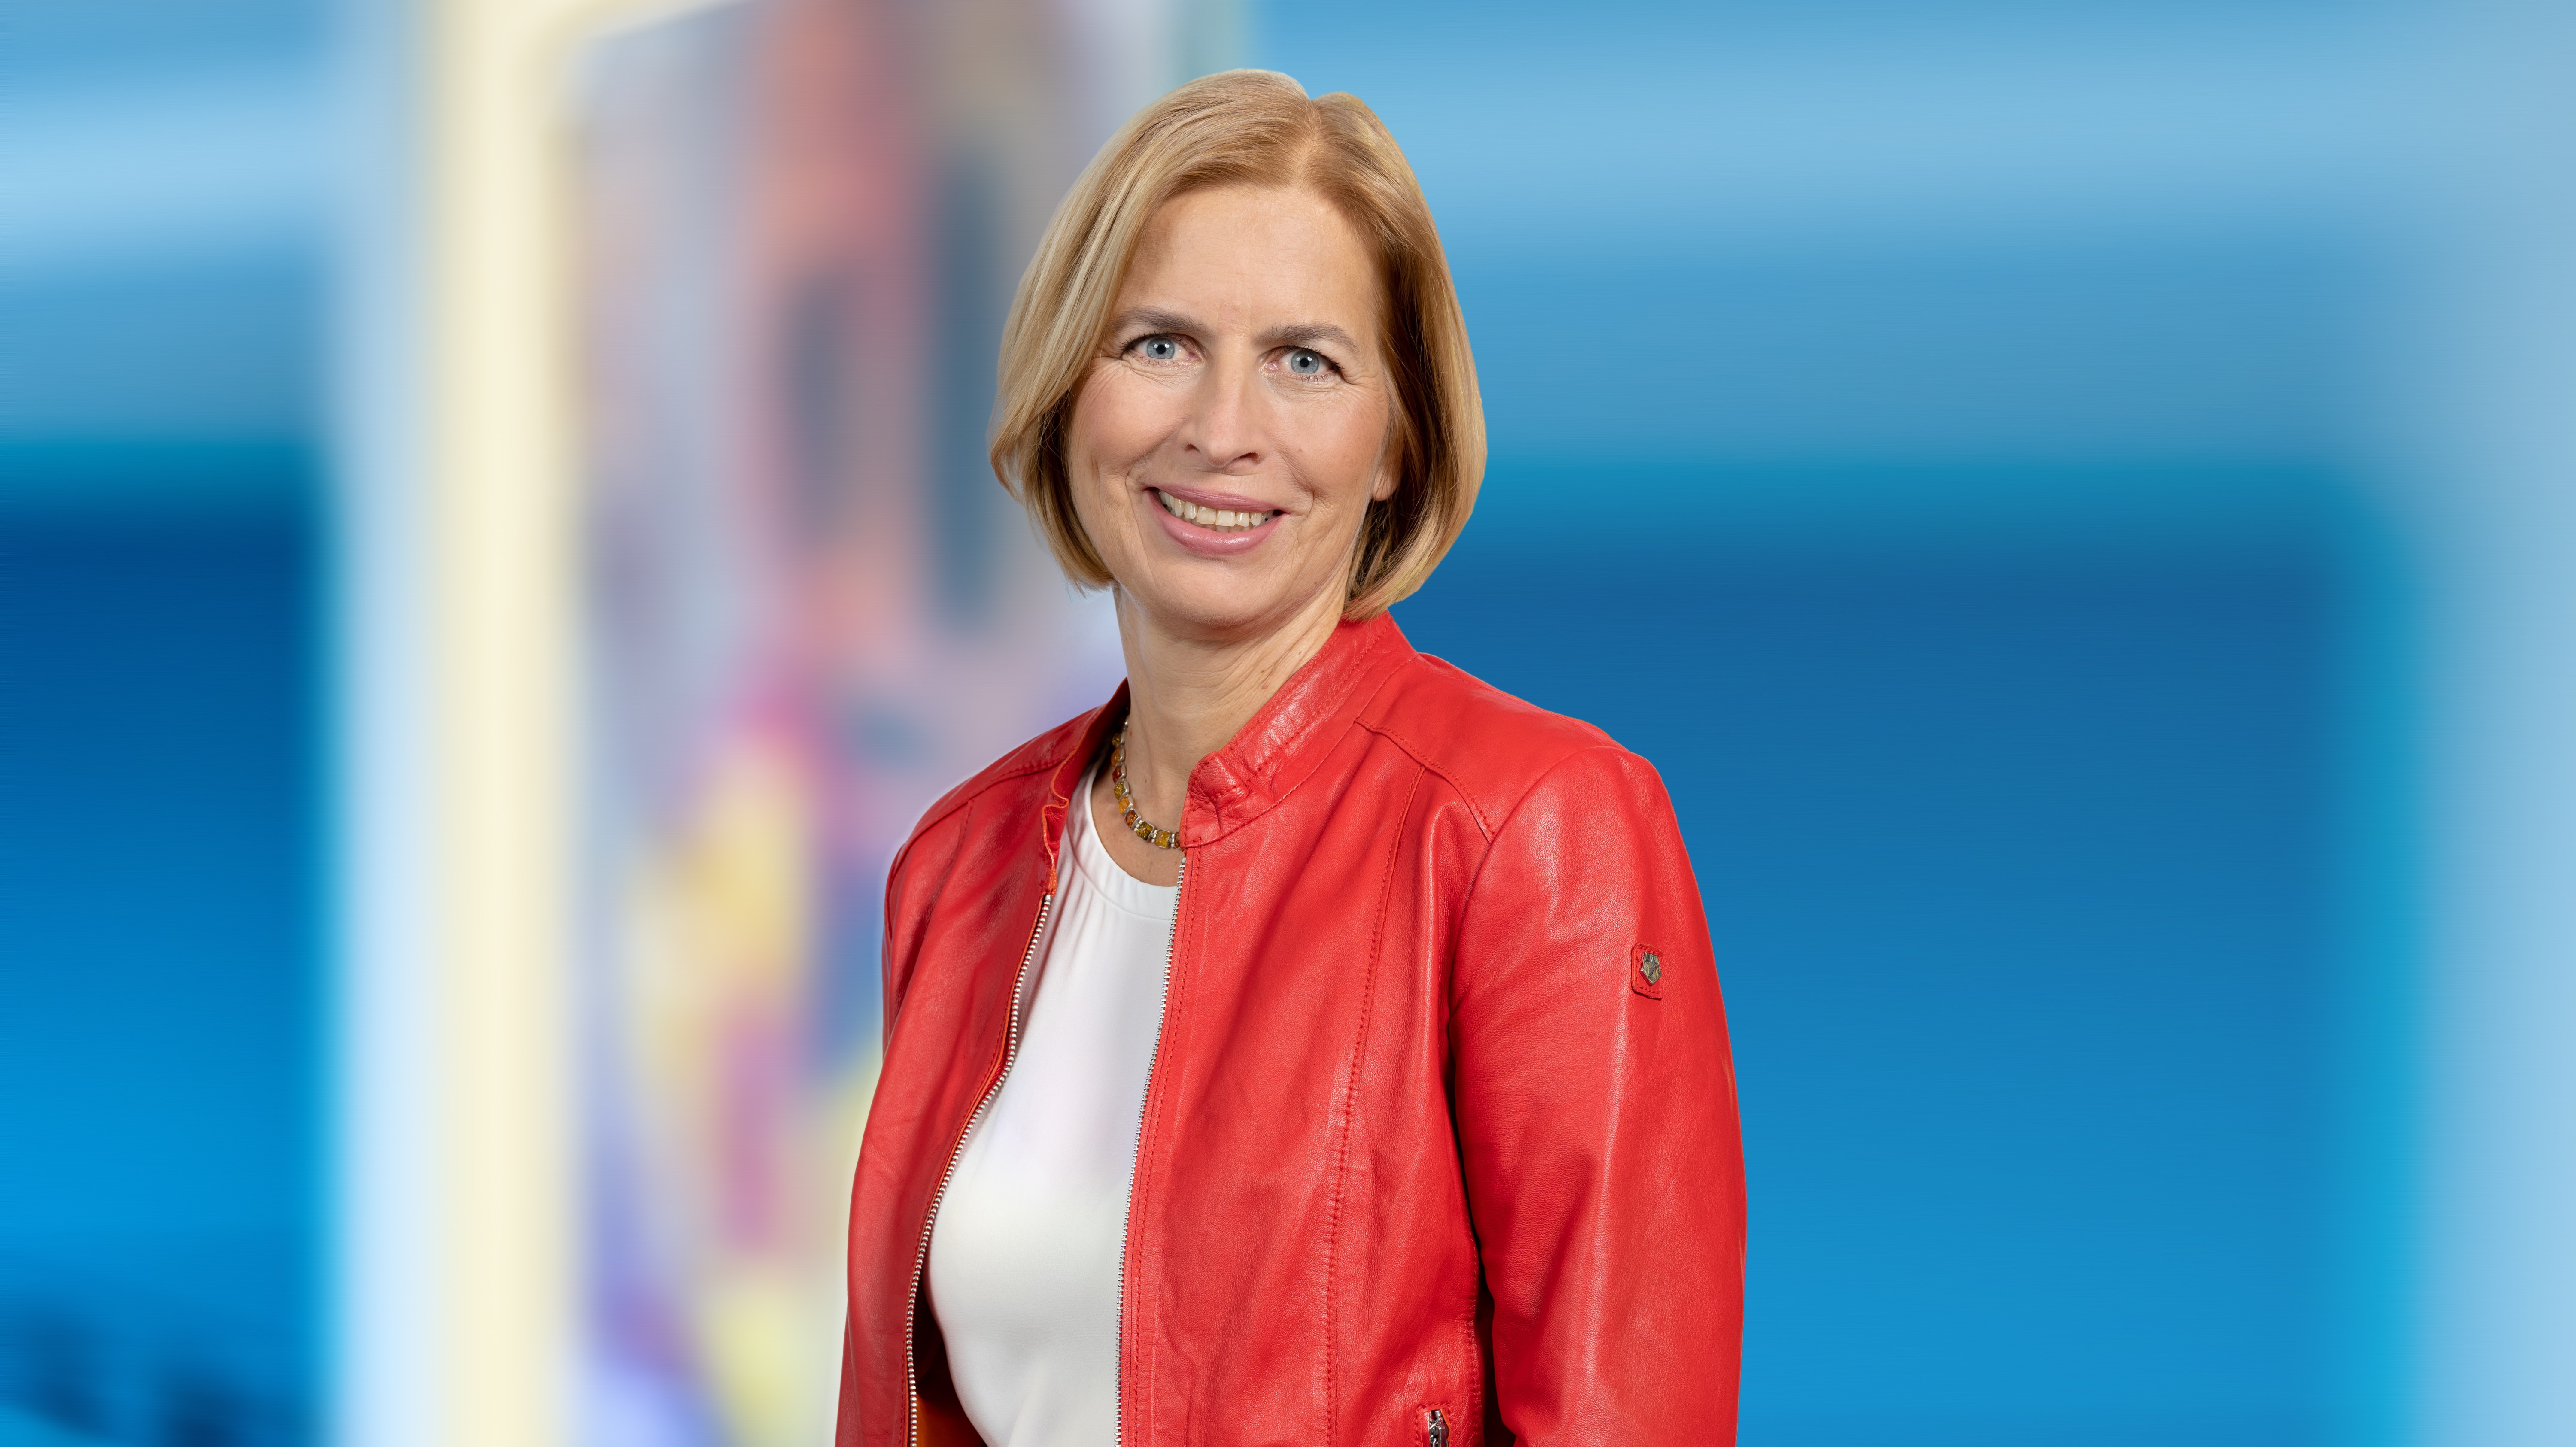 Dr. Tanja Rückert